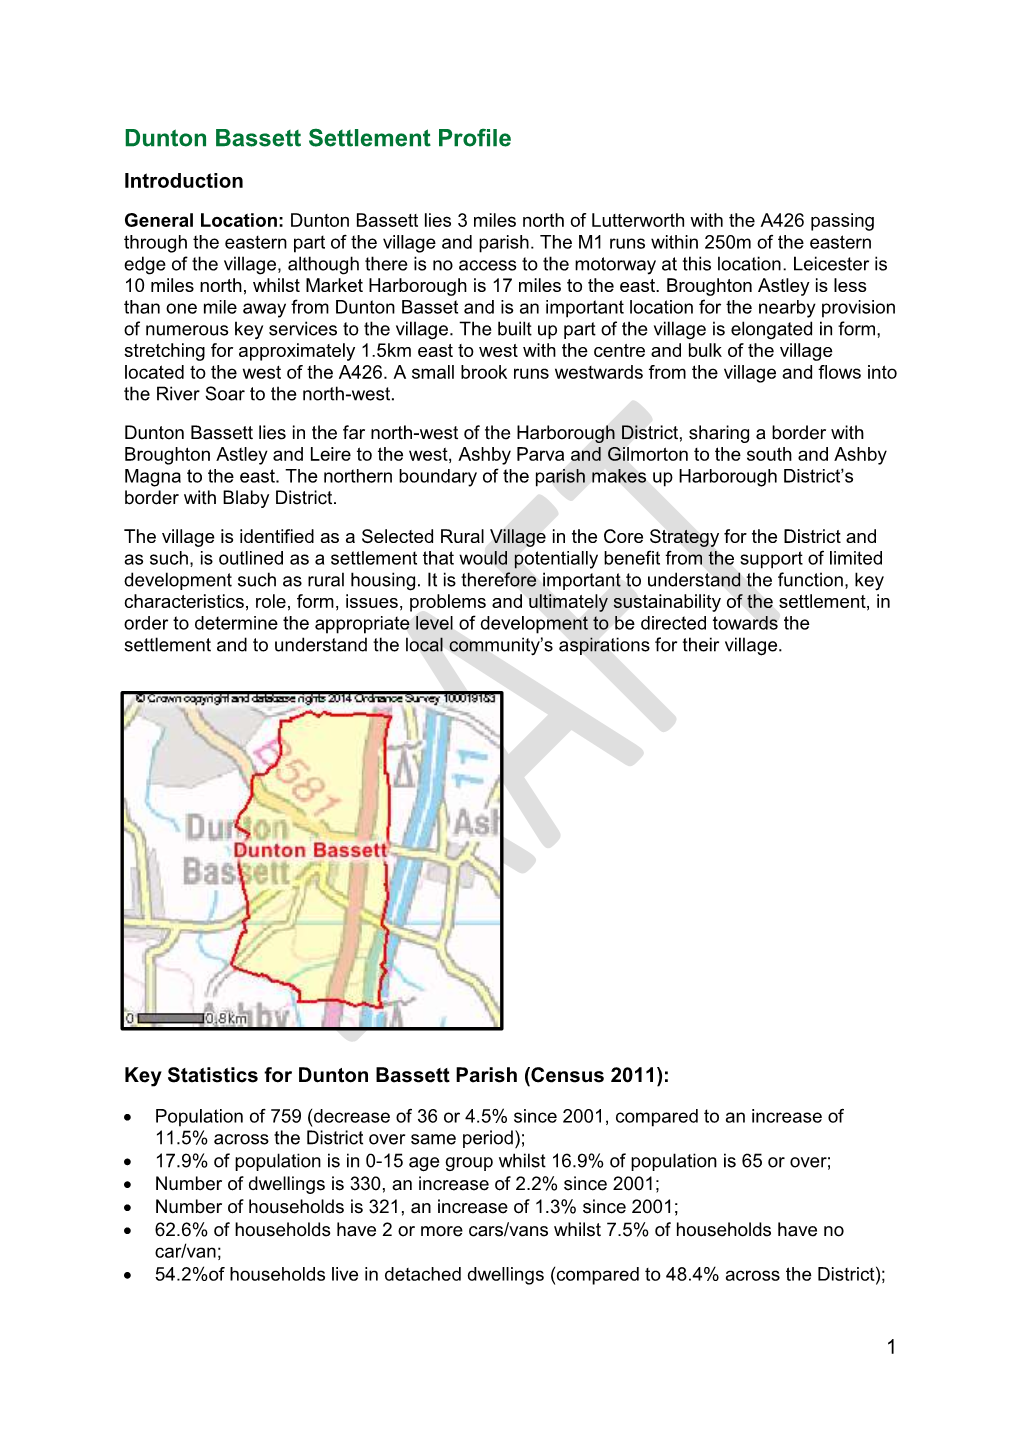 Dunton Bassett Settlement Profile Introduction